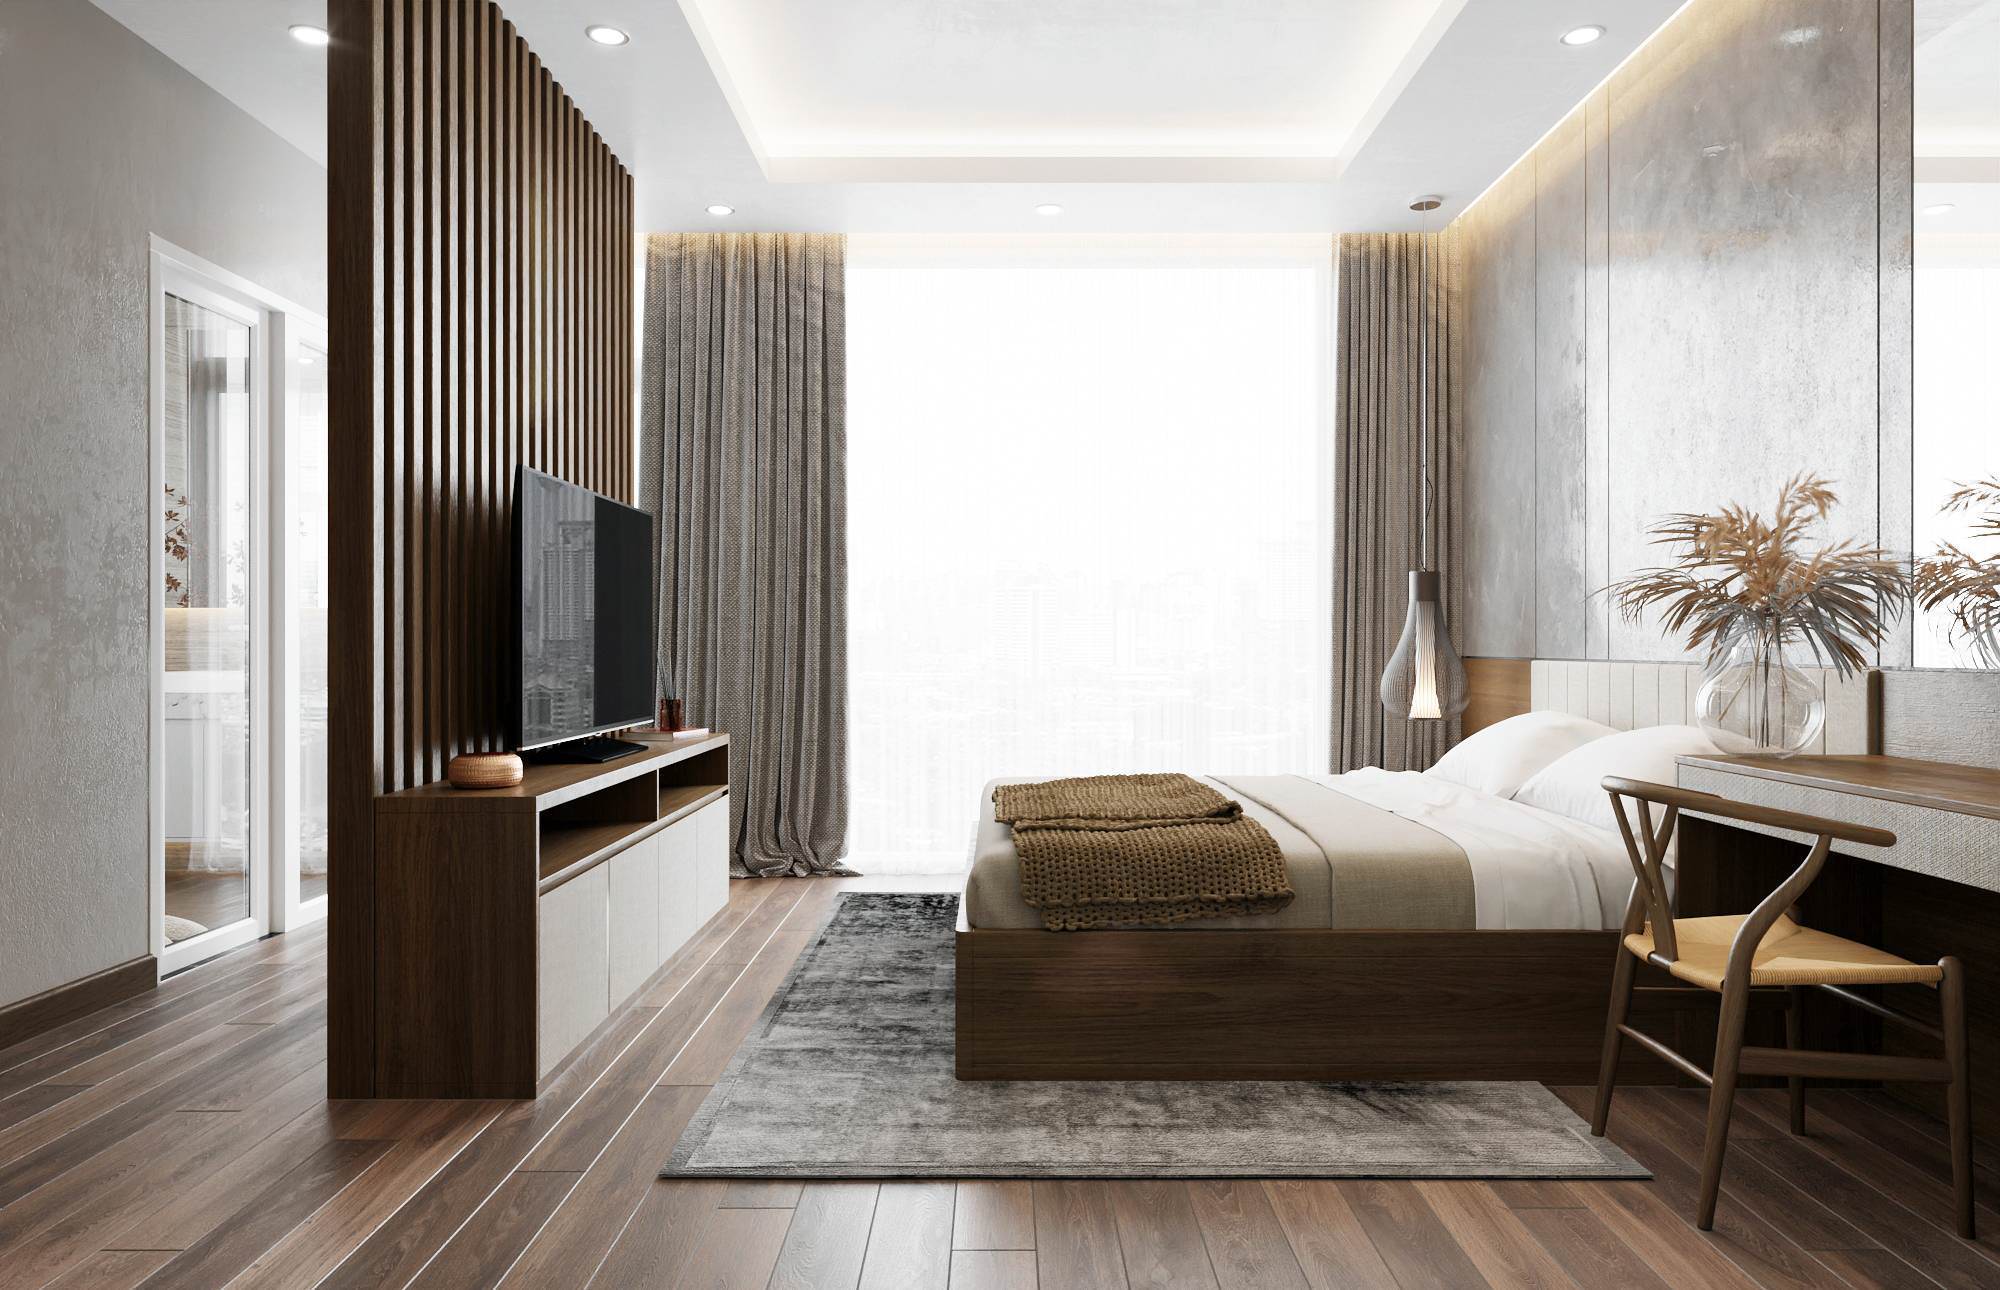 Lát nền phòng ngủ giả vân gỗ đẹp mắt đem lại không gian phòng ngủ 30m2 trở nên chân thật, gần gũi